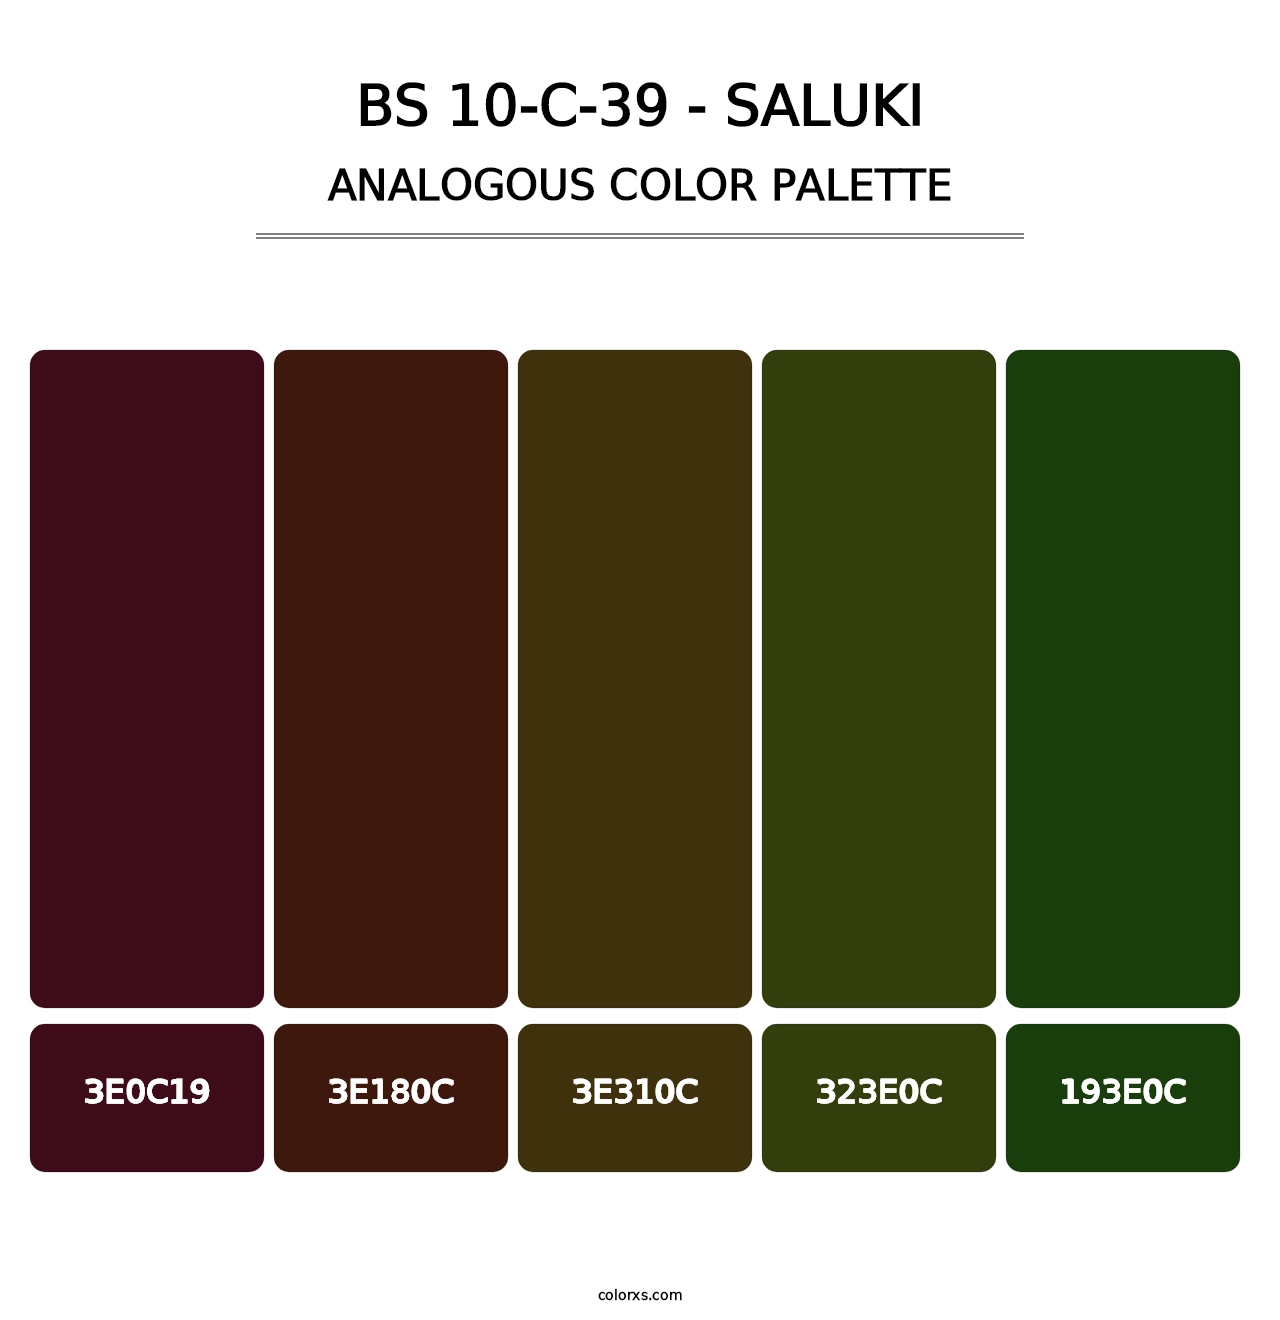 BS 10-C-39 - Saluki - Analogous Color Palette